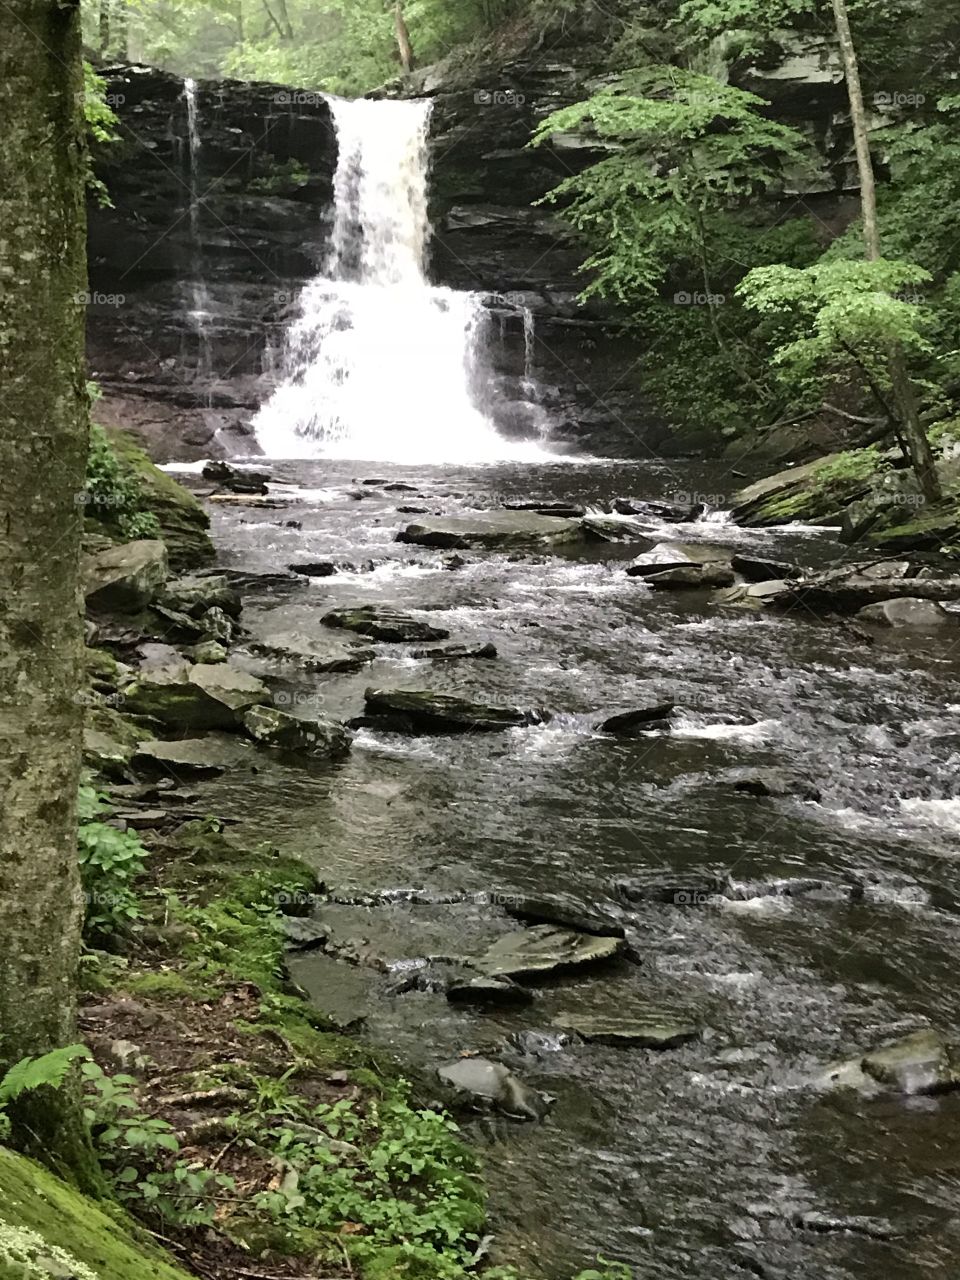 Falls trail